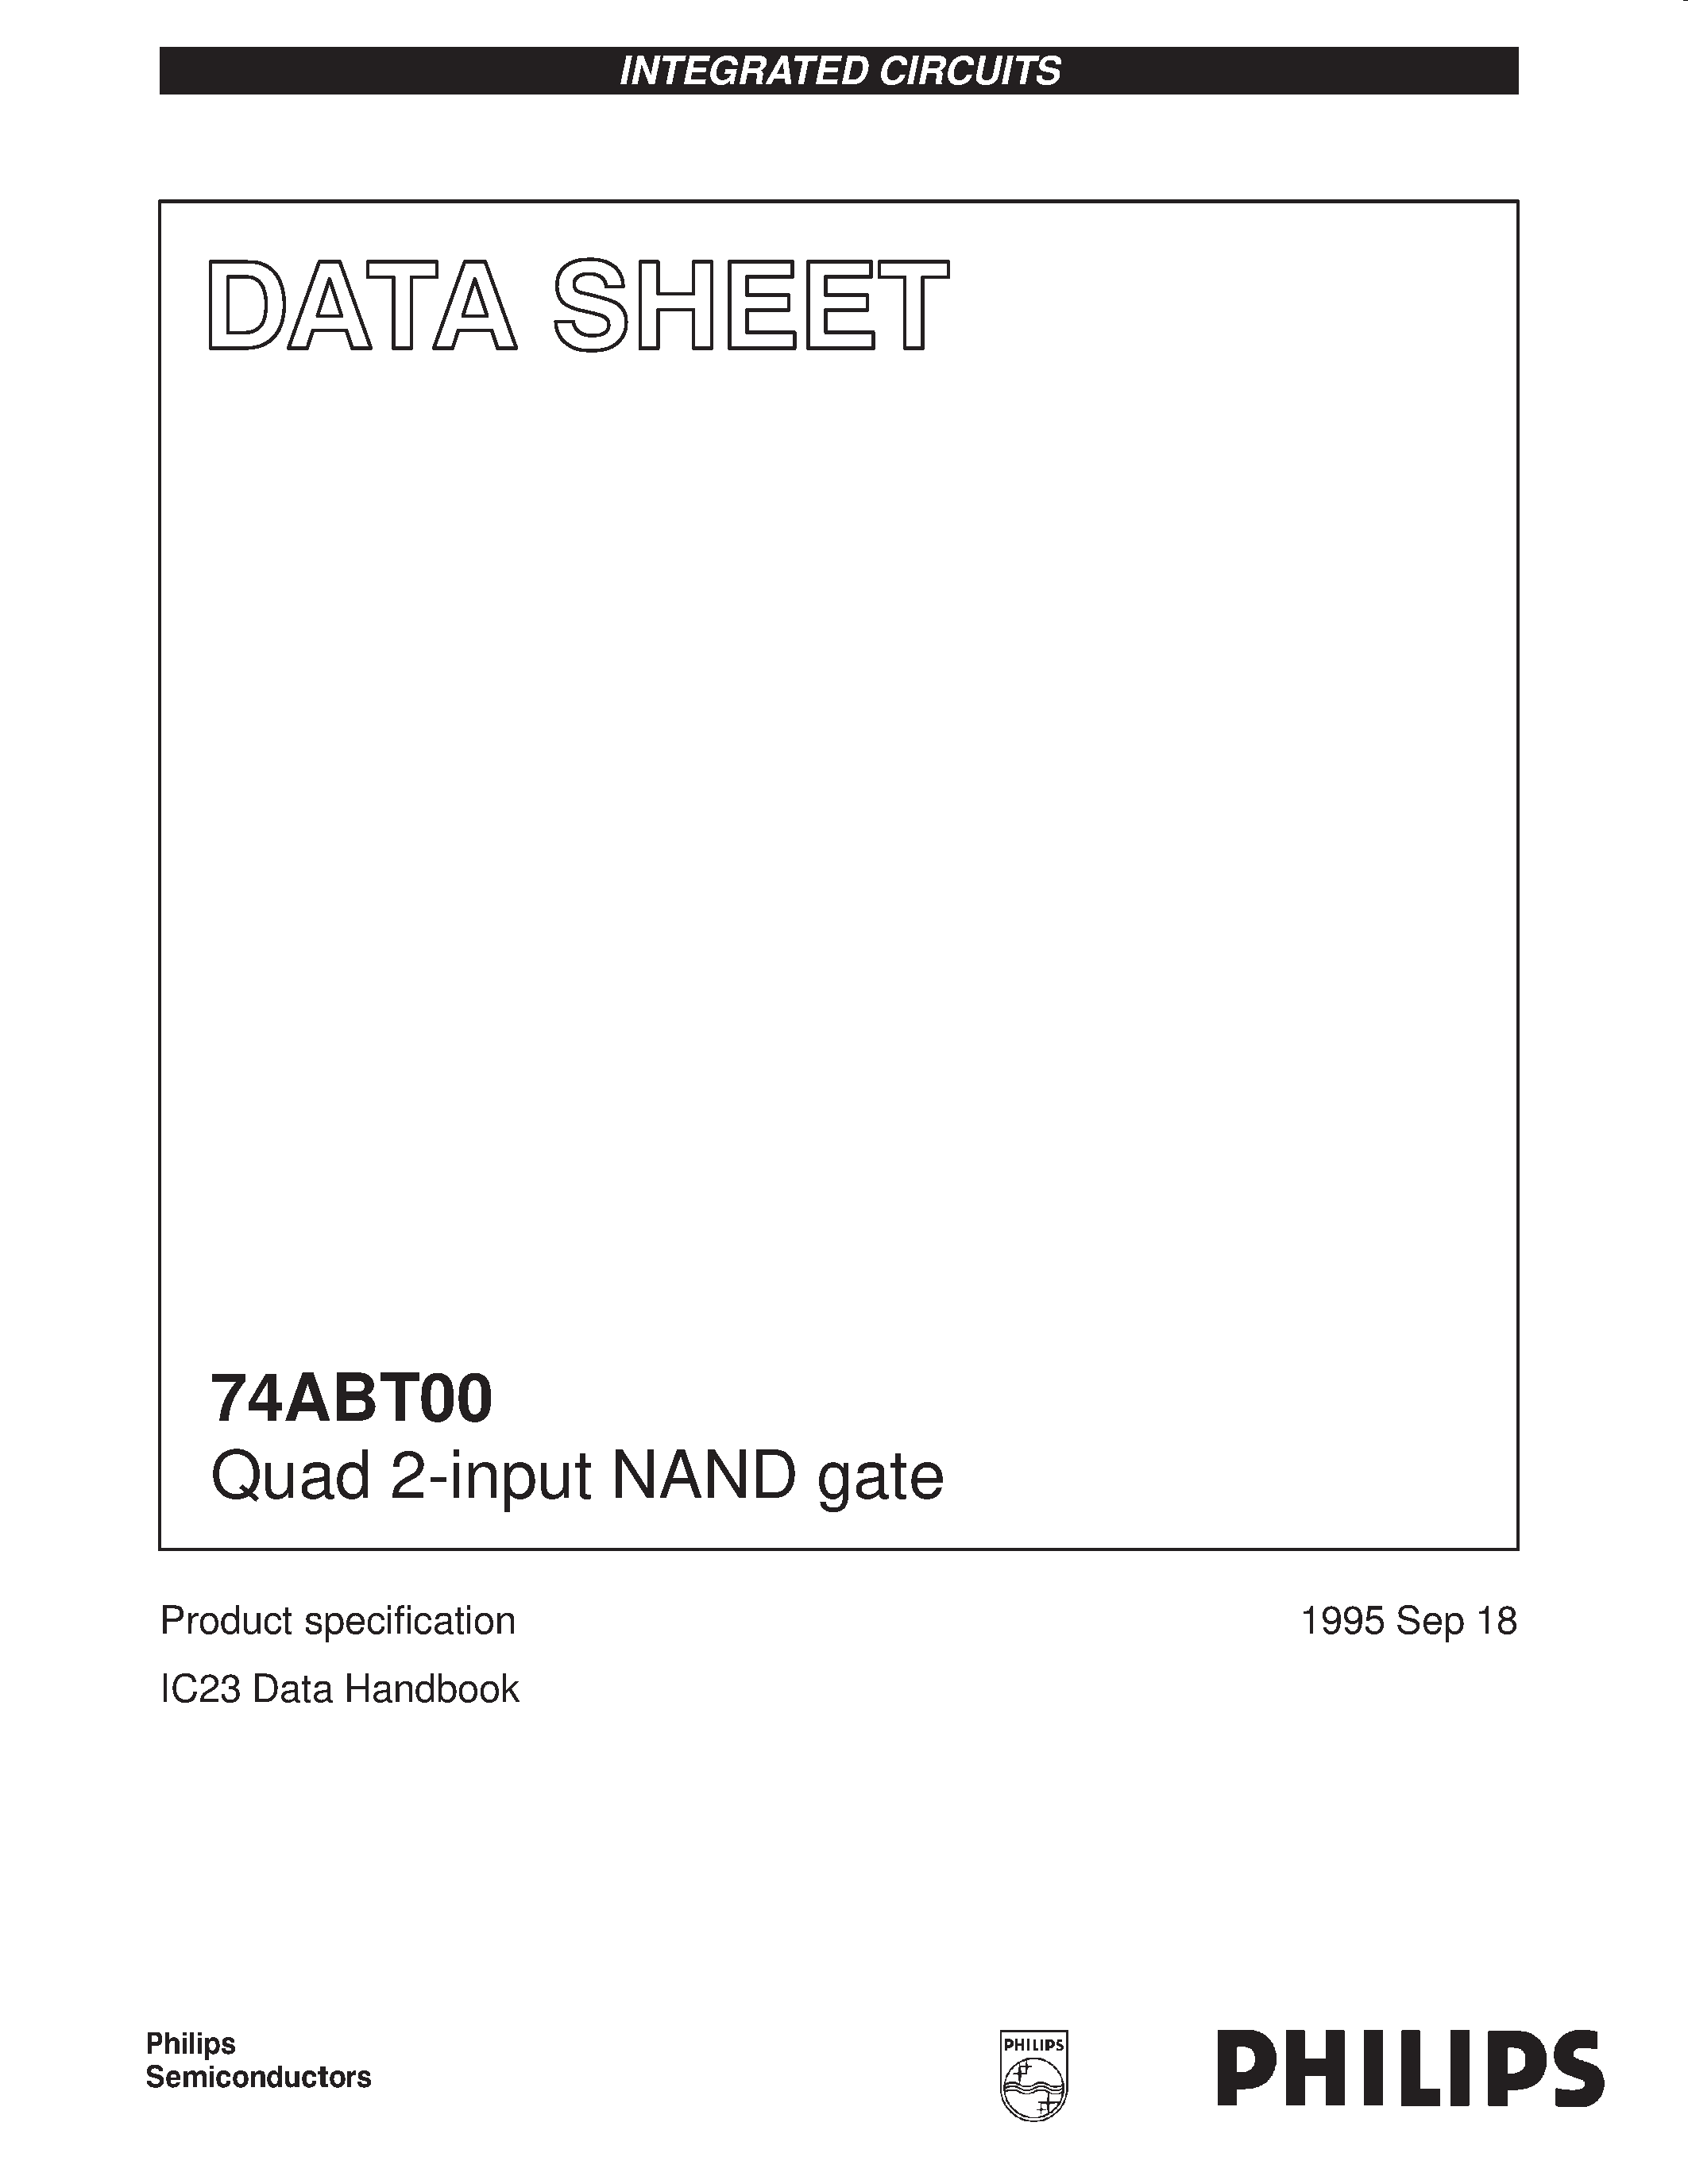 Даташит 74ABT00DB - Quad 2-input NAND gate страница 1